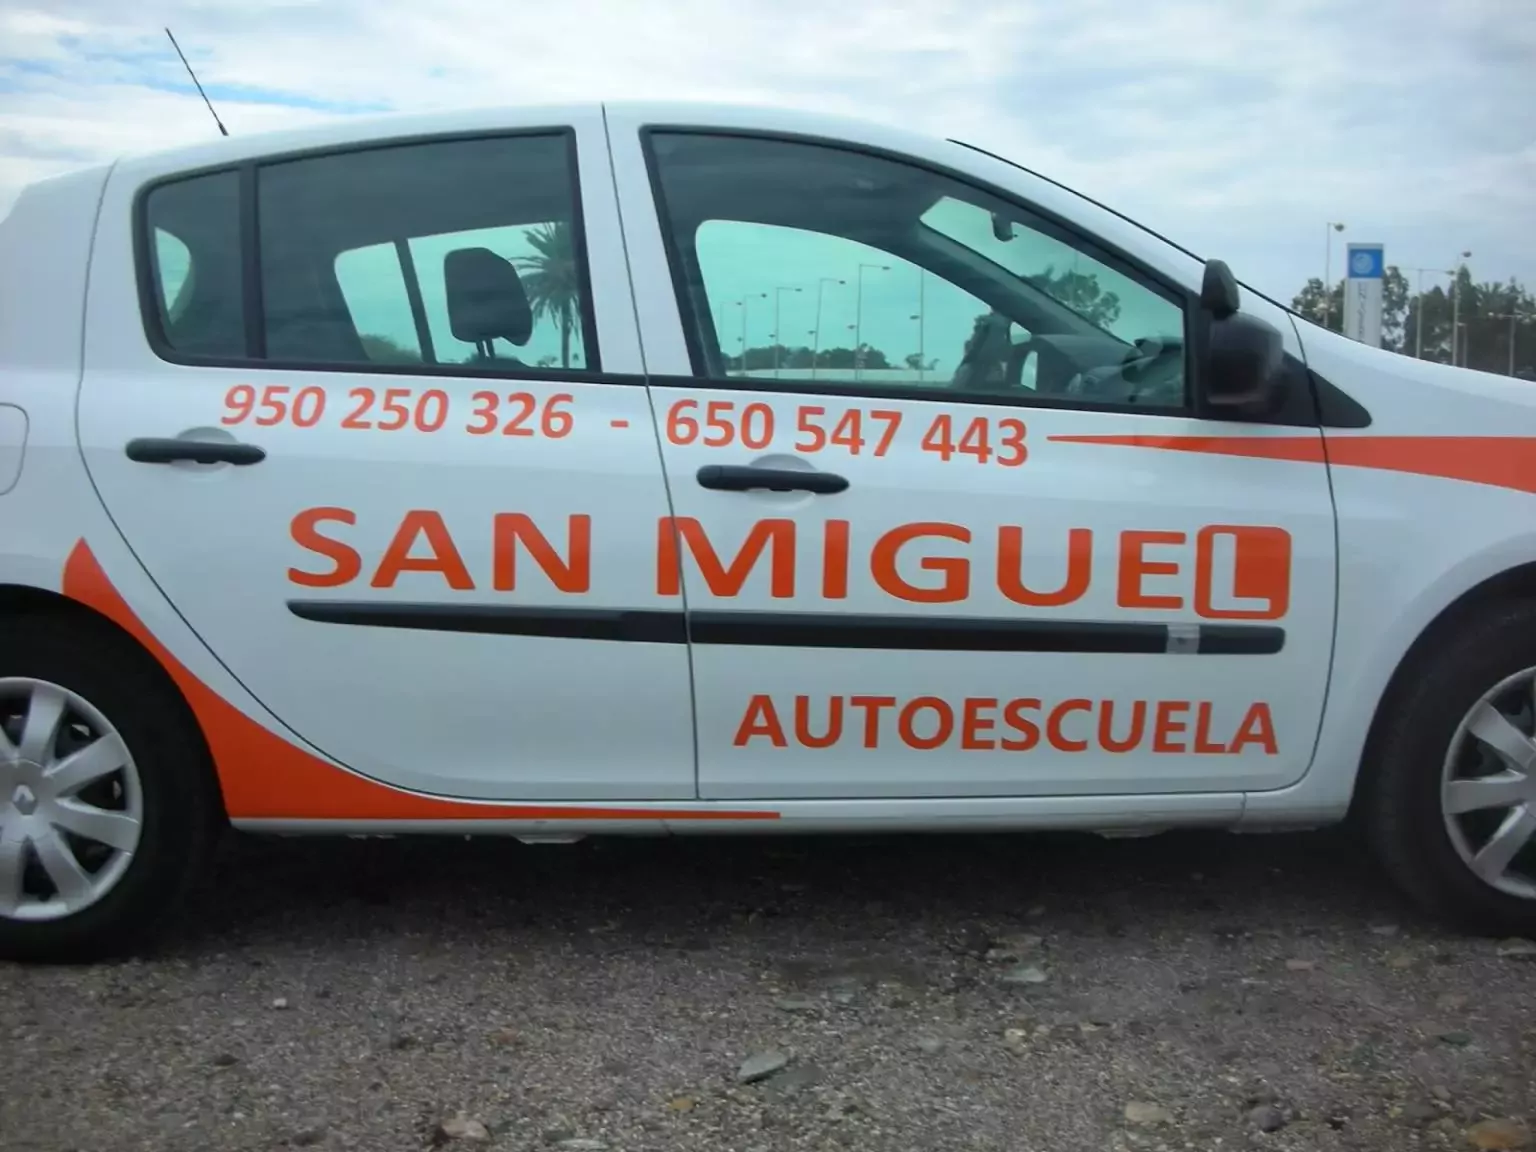 4. Autoescuela SAN MIGUEL